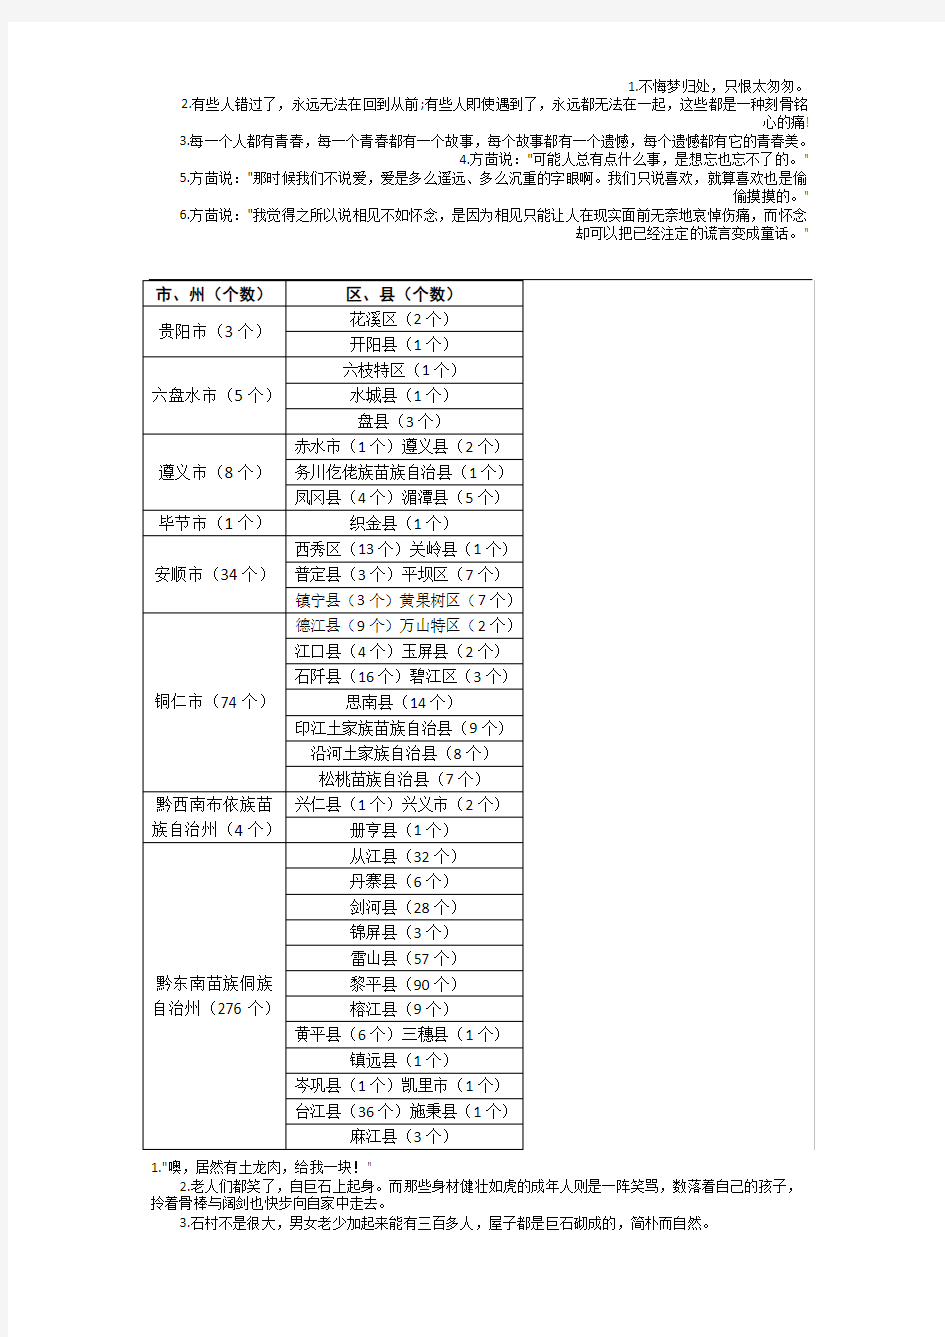 贵州传统村落统计表